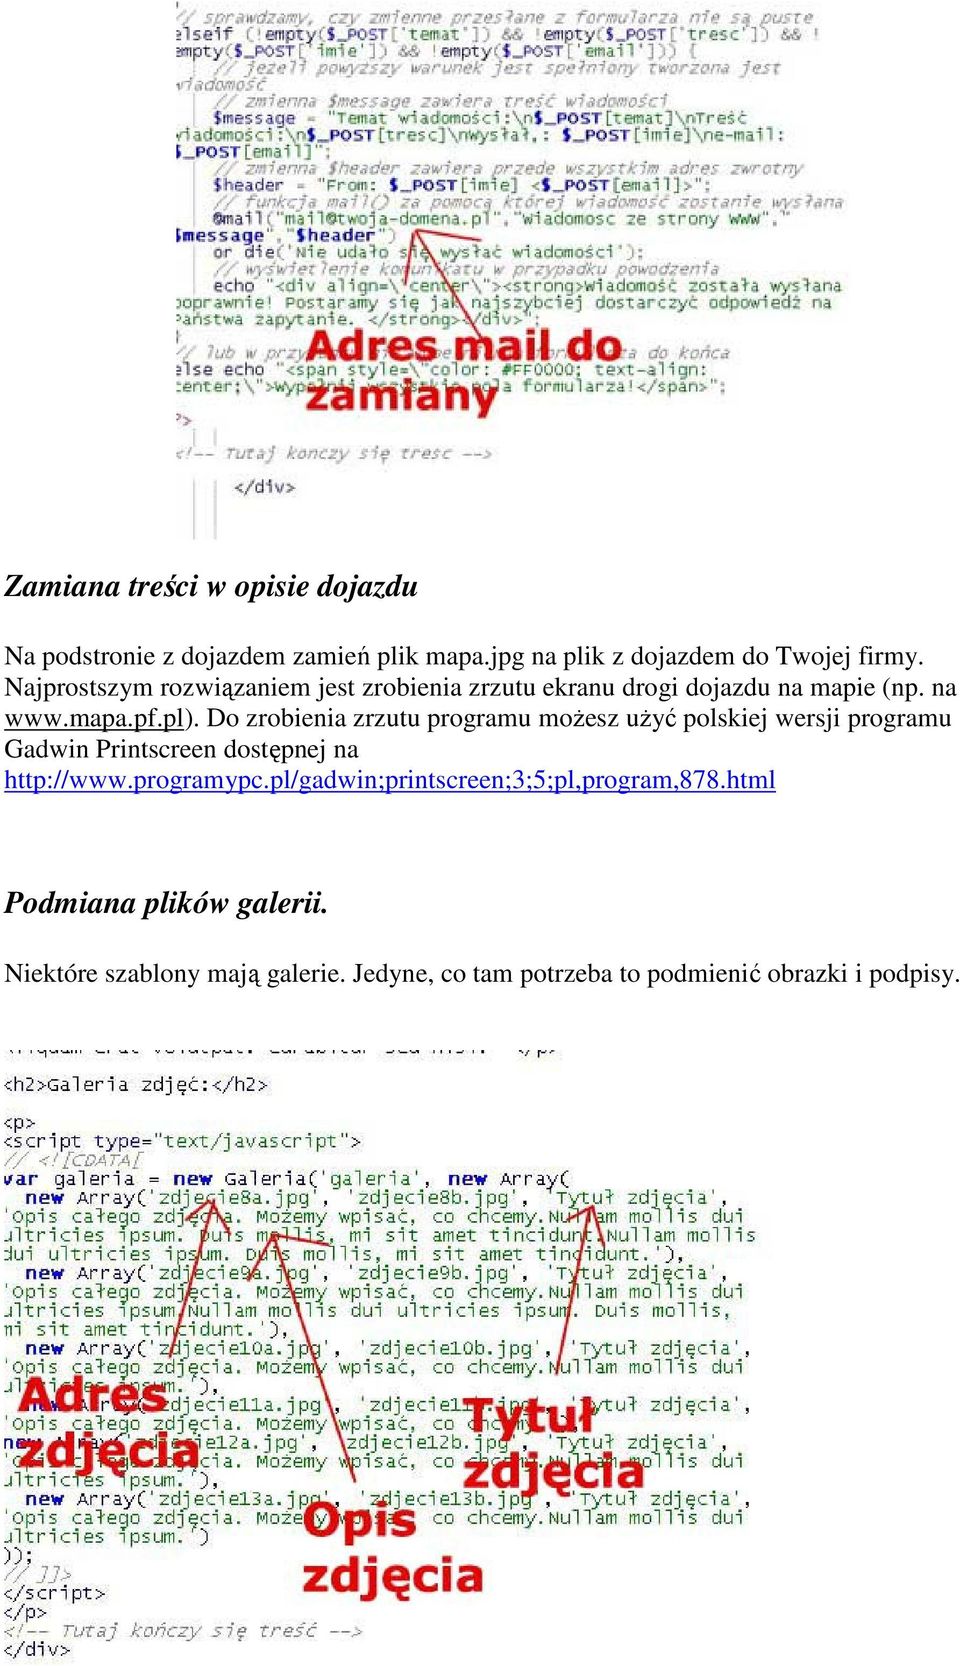 Do zrobienia zrzutu programu możesz użyć polskiej wersji programu Gadwin Printscreen dostępnej na http://www.programypc.